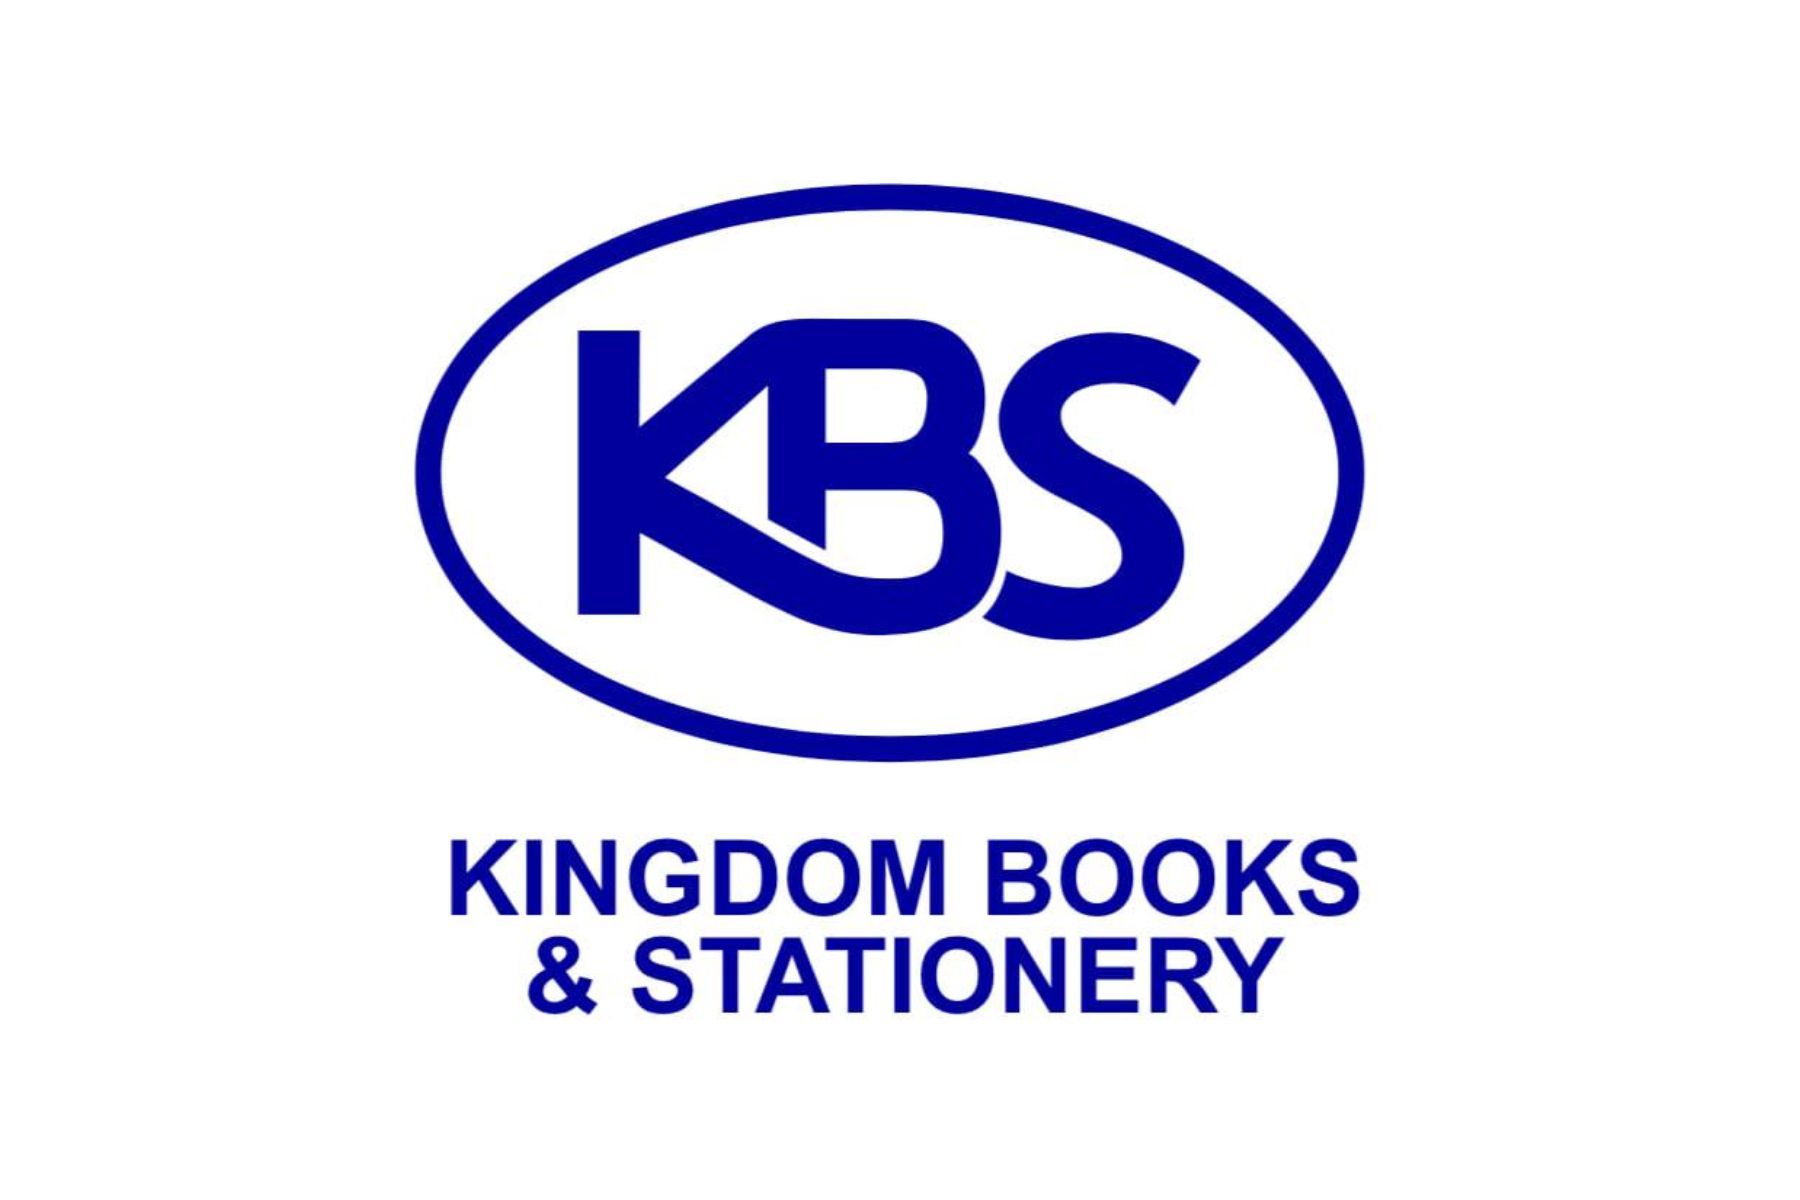 Kingdom Books